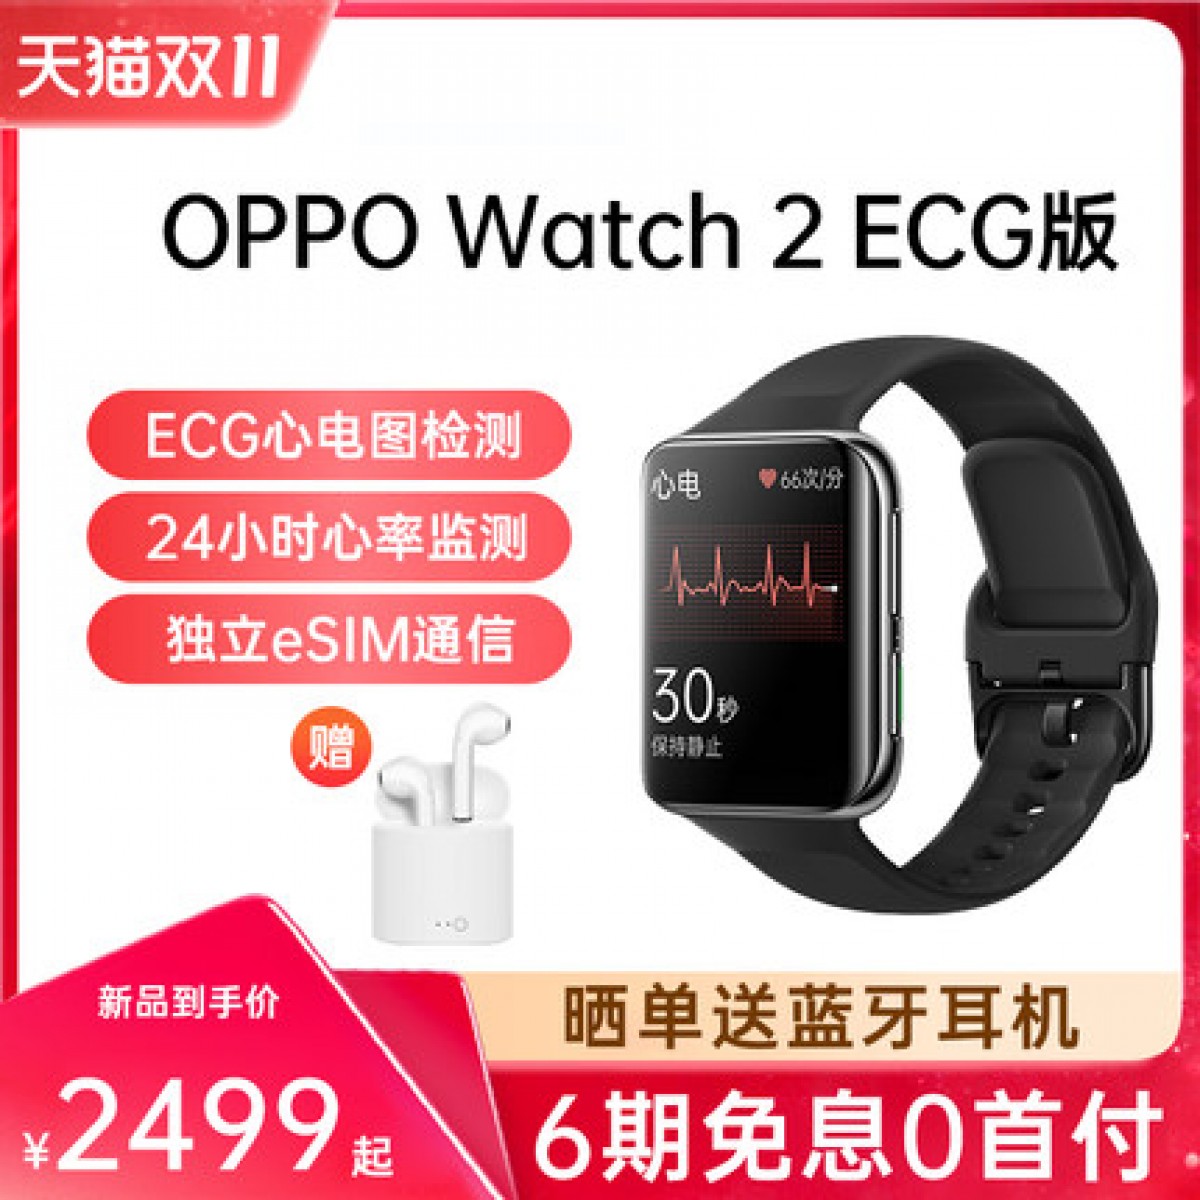 【新品6期免息】OPPO Watch2 ECG版新款上市男女智能手表长续航oppo手表 ecg版watch2oppo智能